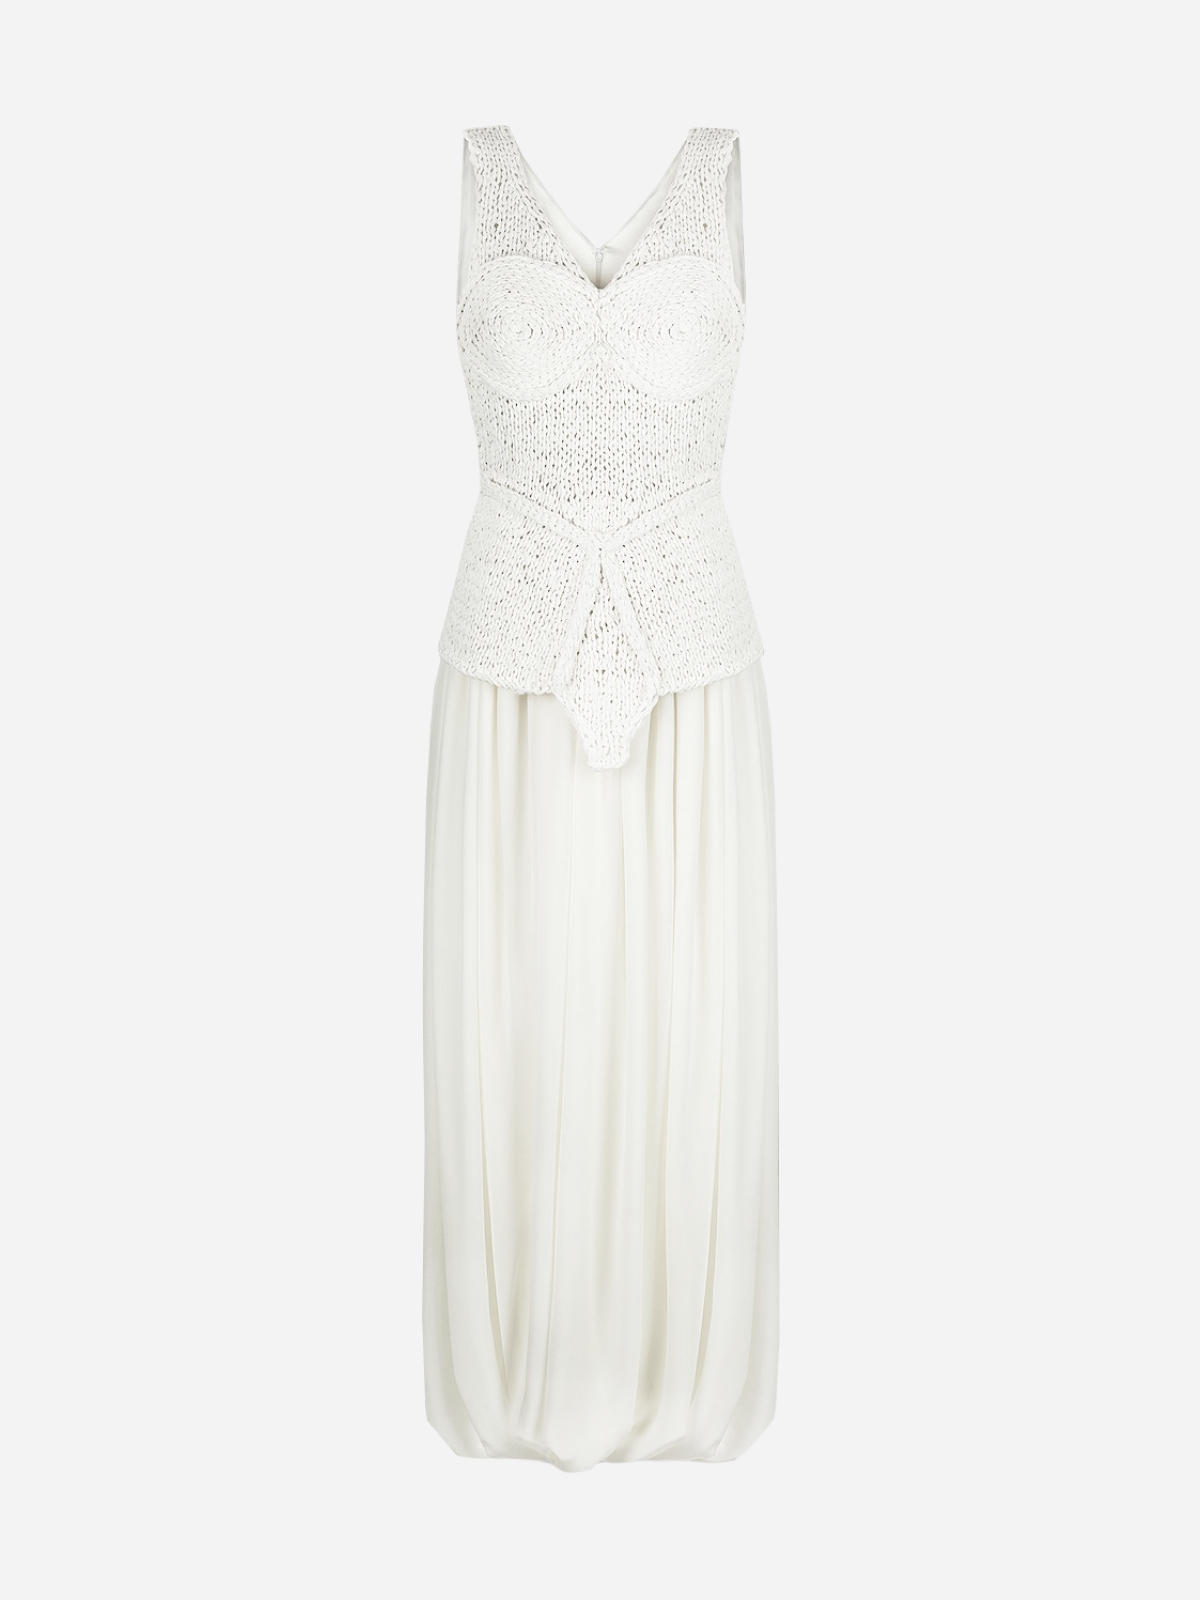 На свадьбу, после свадьбы или просто так: 20 лаконичных белых платьев на лето (фото 13)